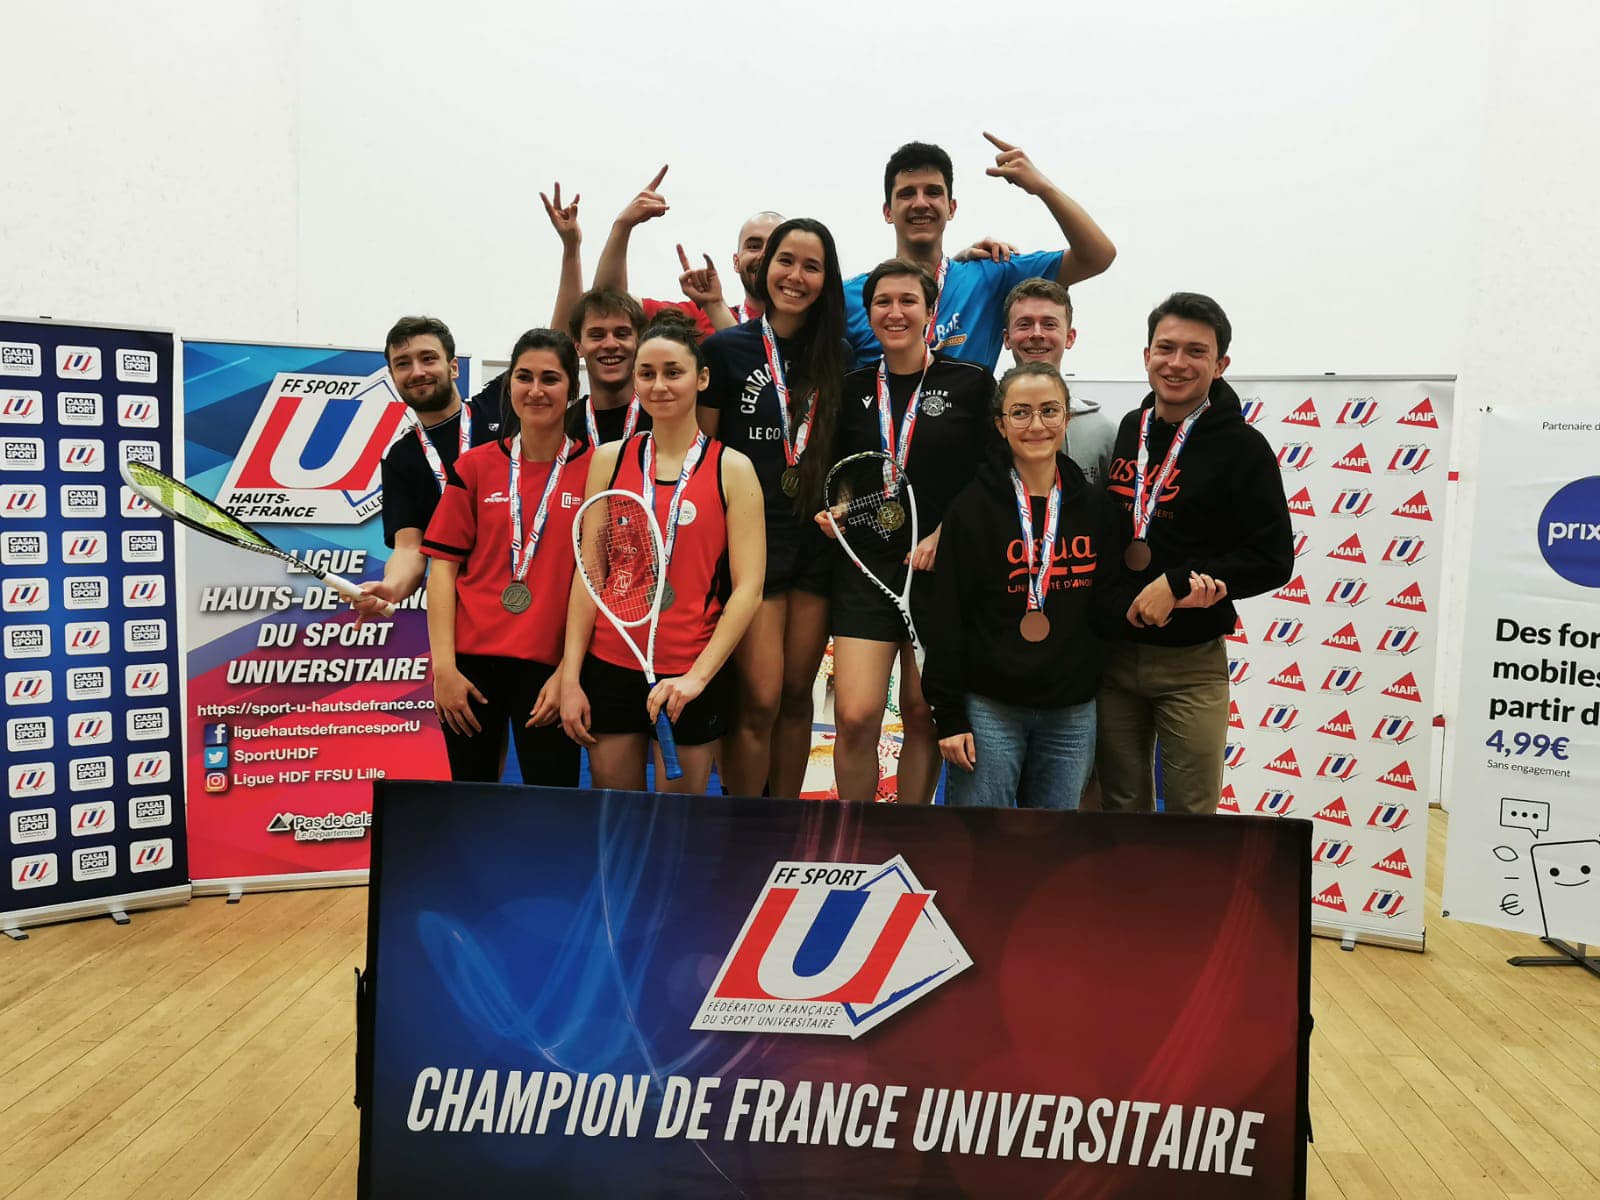 Champion de France Universitaire de squash par équipe